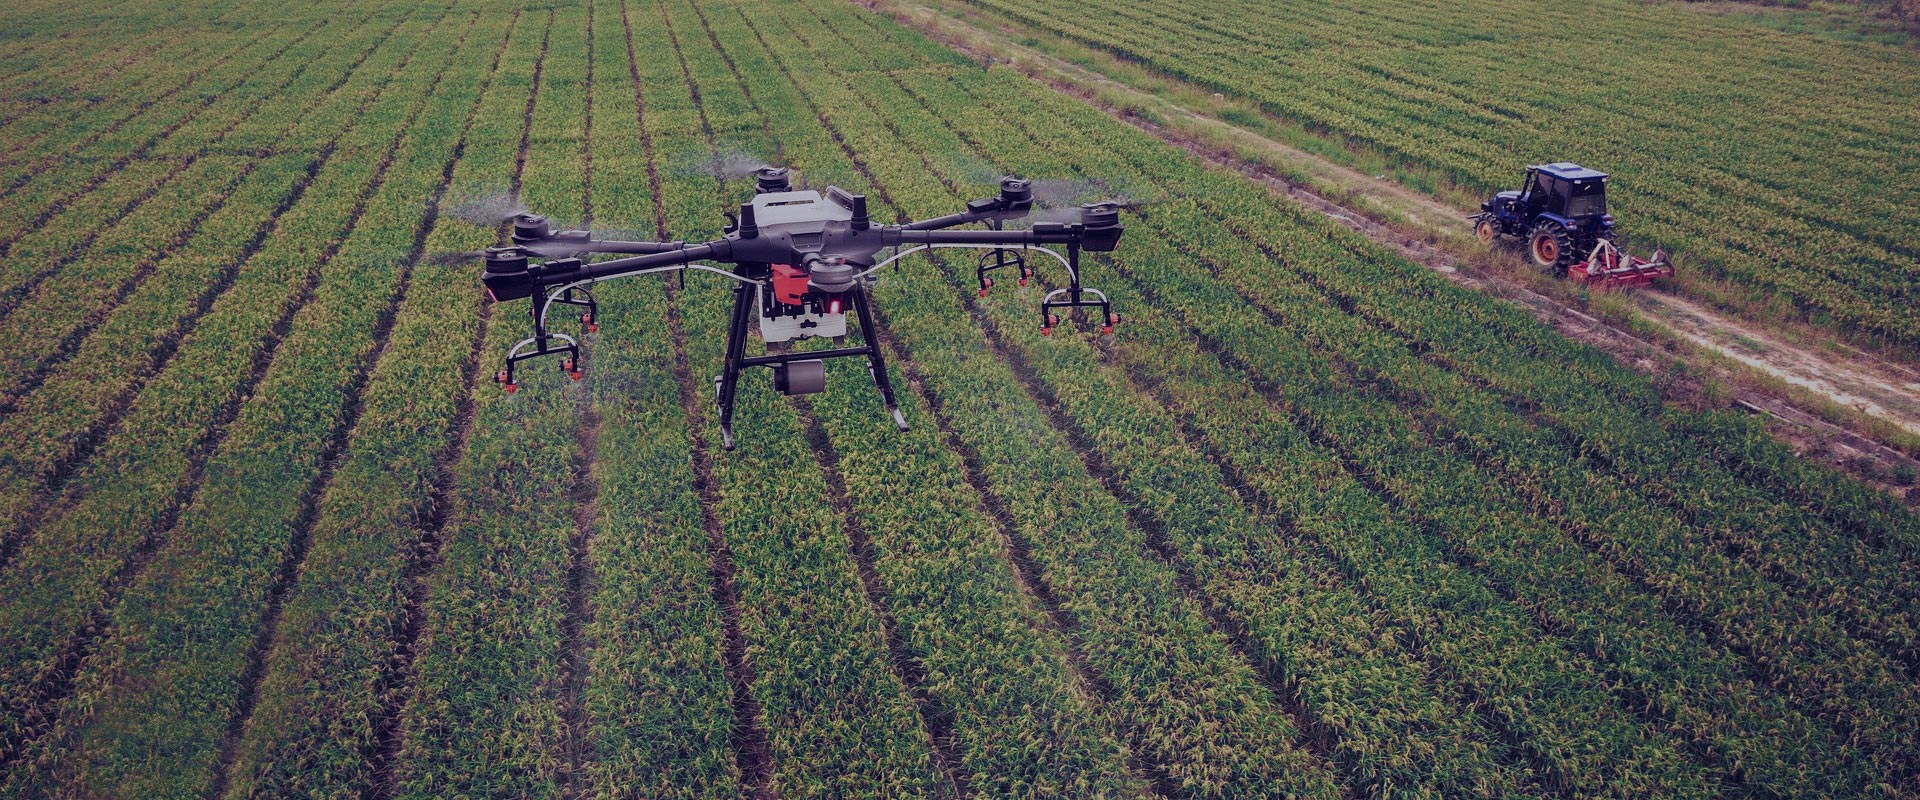 Drone surveillant un champs